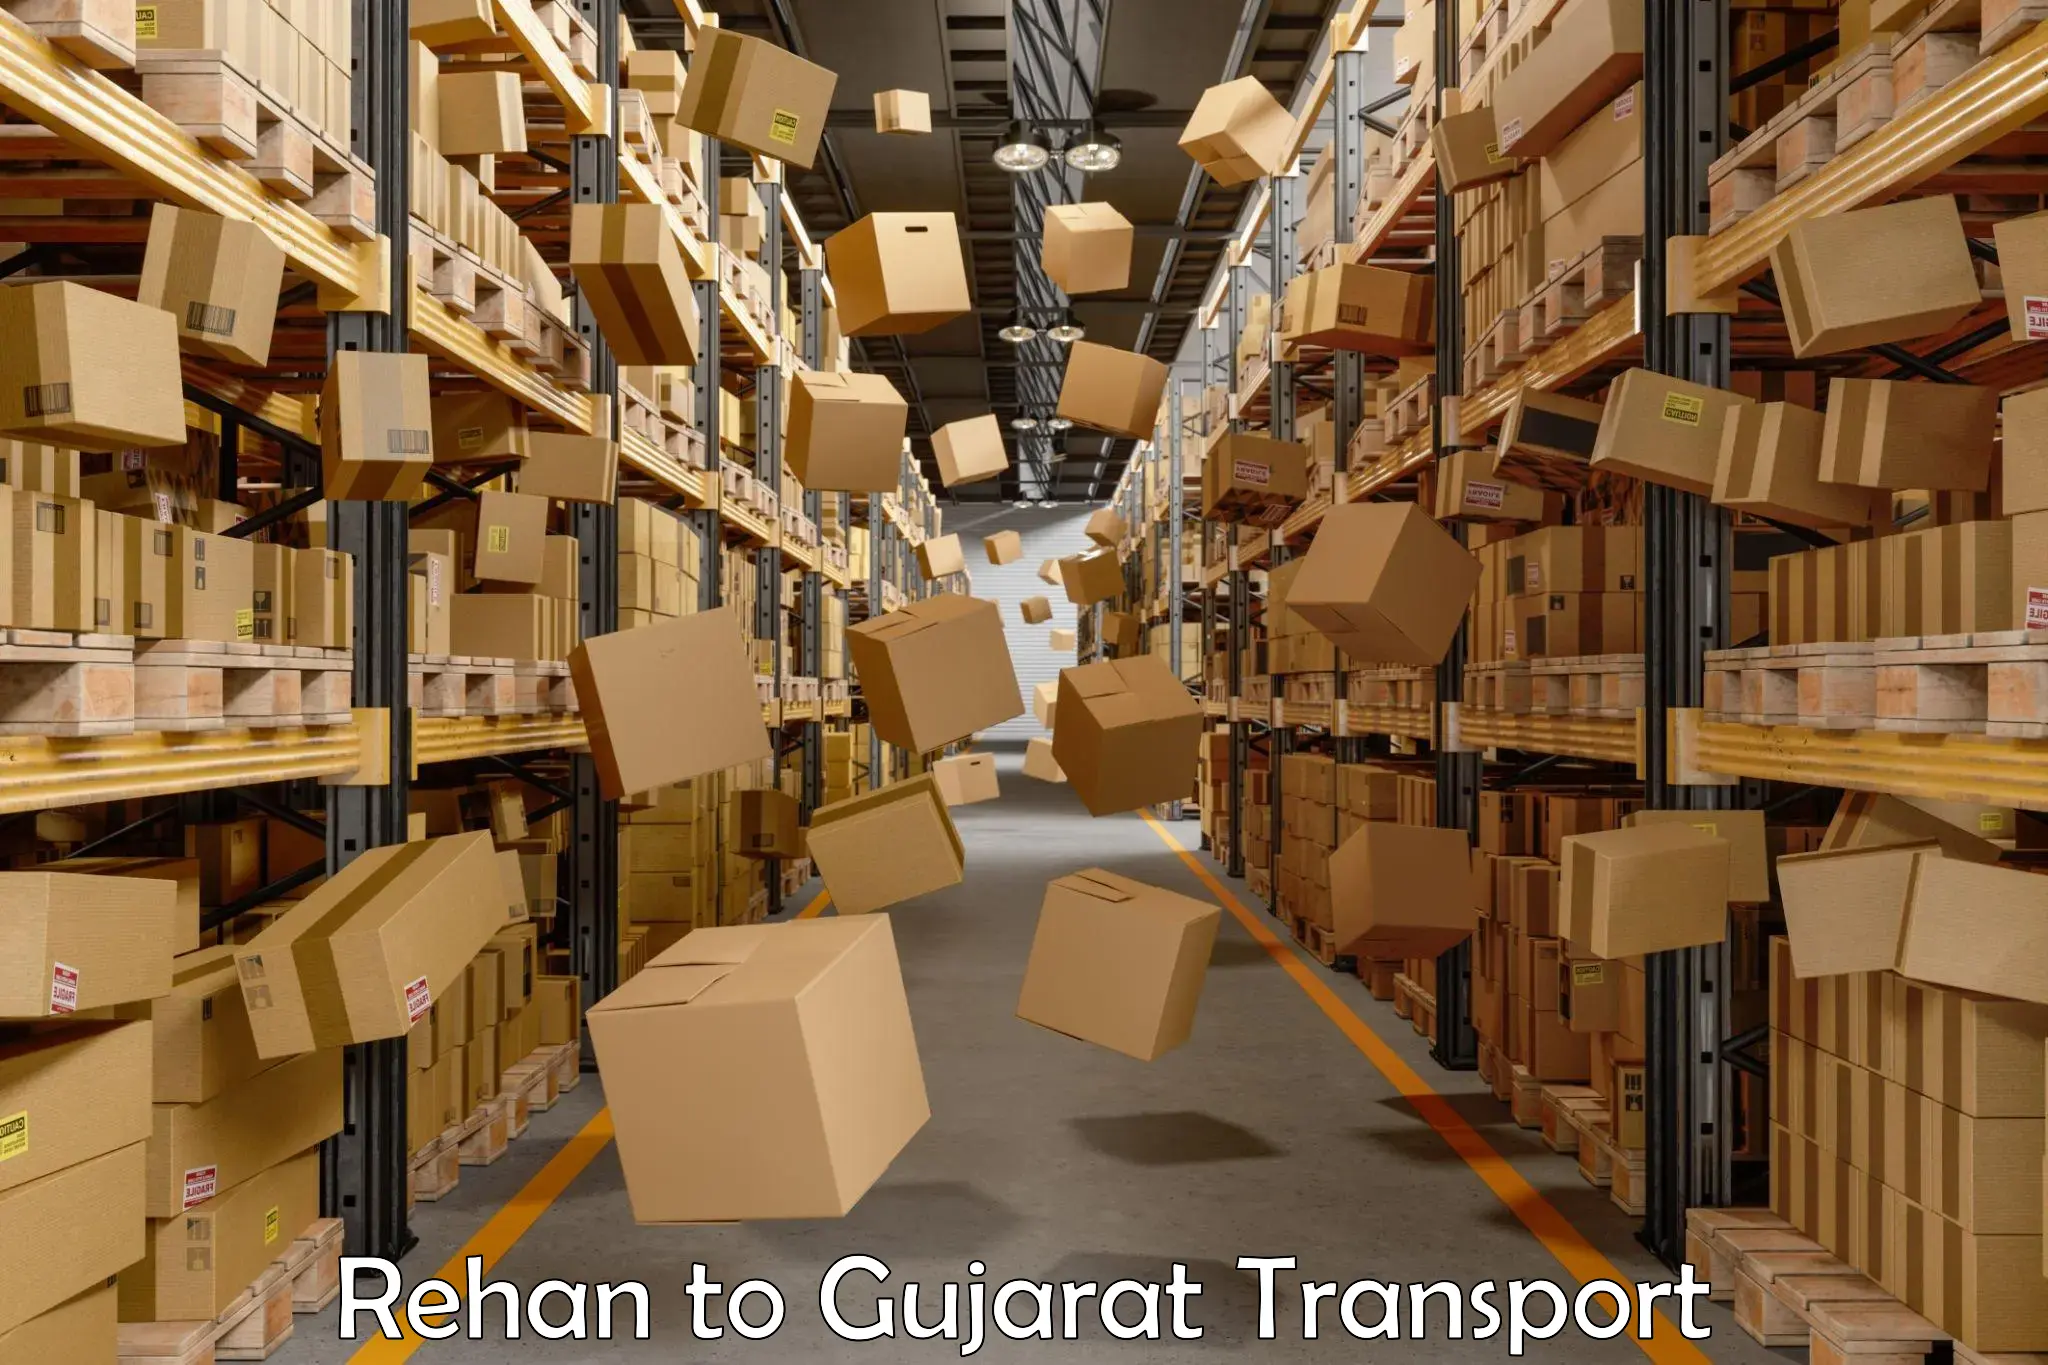 Pick up transport service in Rehan to IIIT Surat